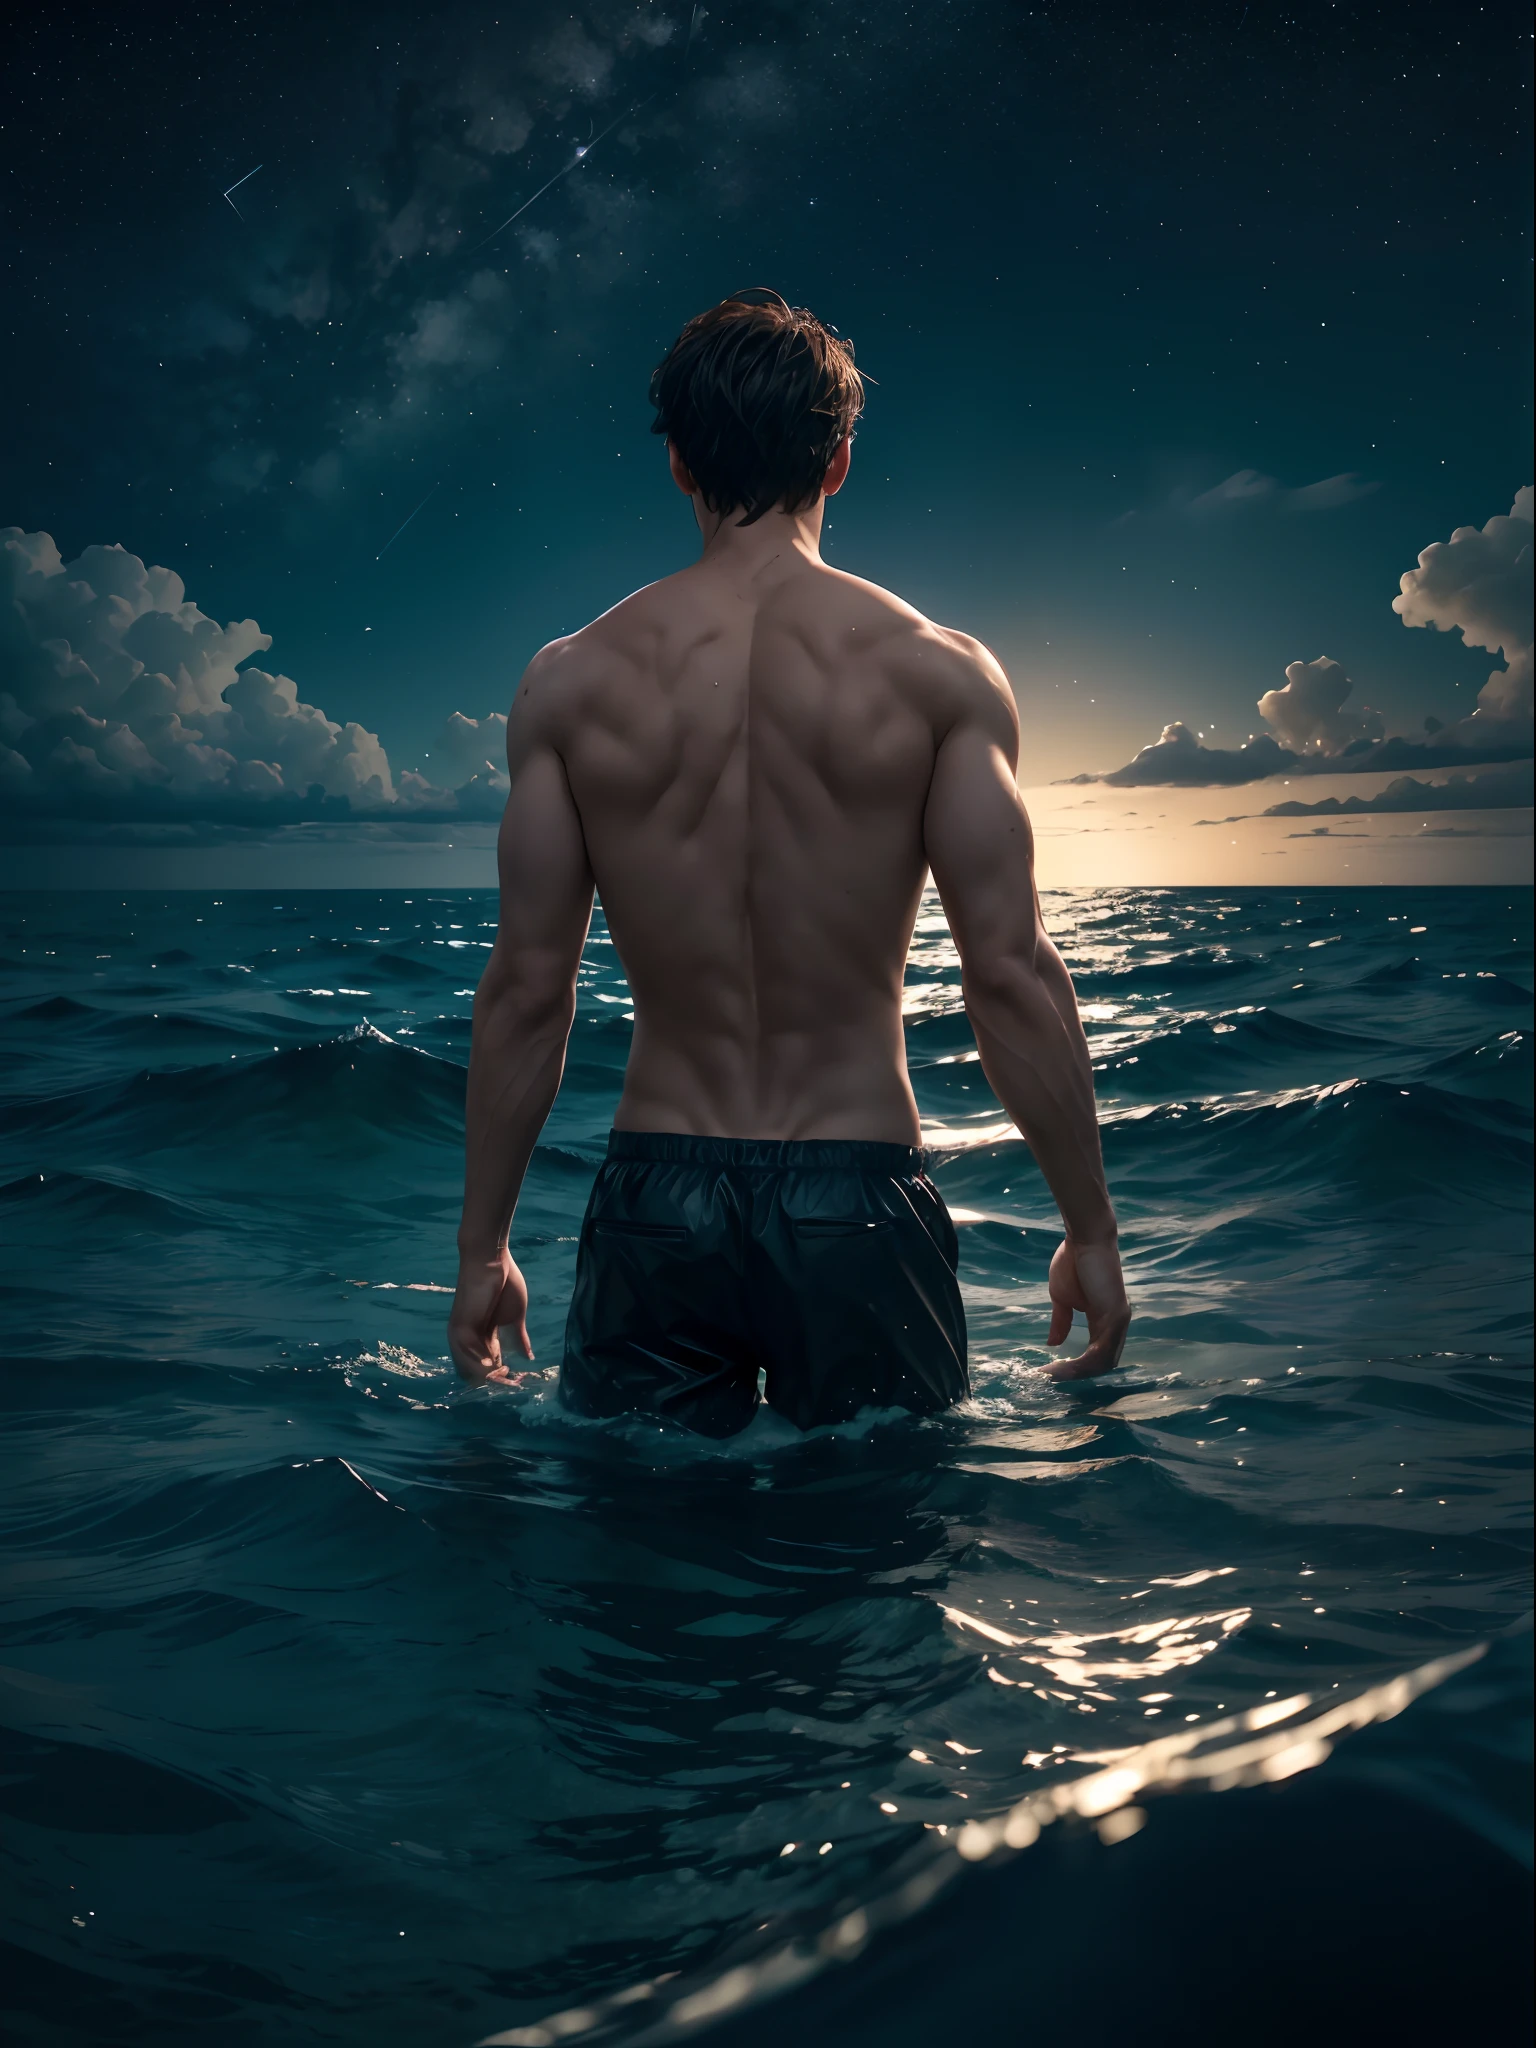 un homme, dans une mer, avec la moitié de son corps immergé dans l’eau, derrière un ciel étoilé avec une lune au centre